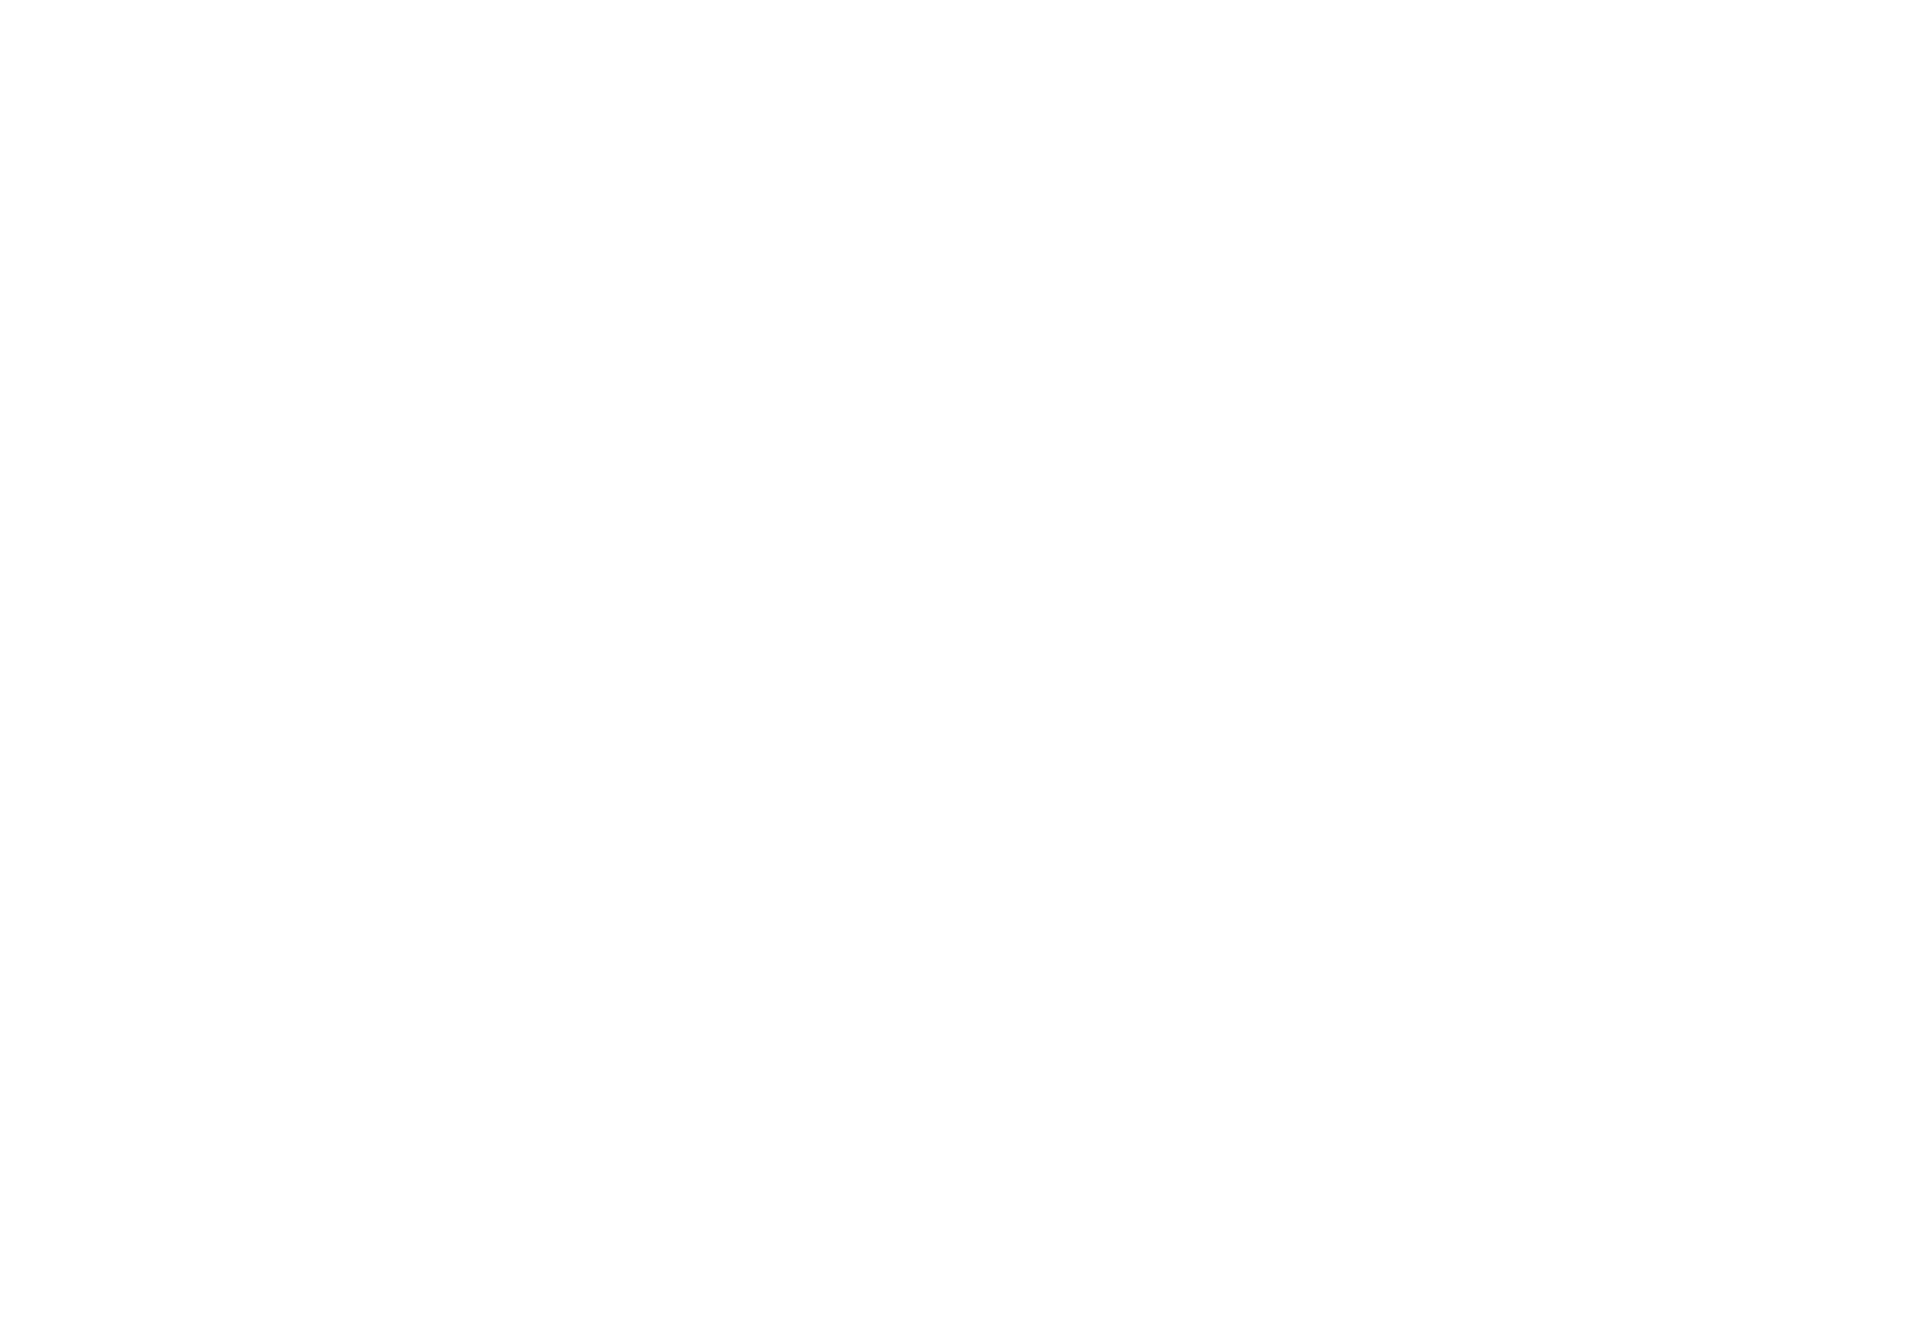 Cruzeta Polimérica de Resina Poliéster Reforçada com Fibra de Vidro  Cód. CPRFV